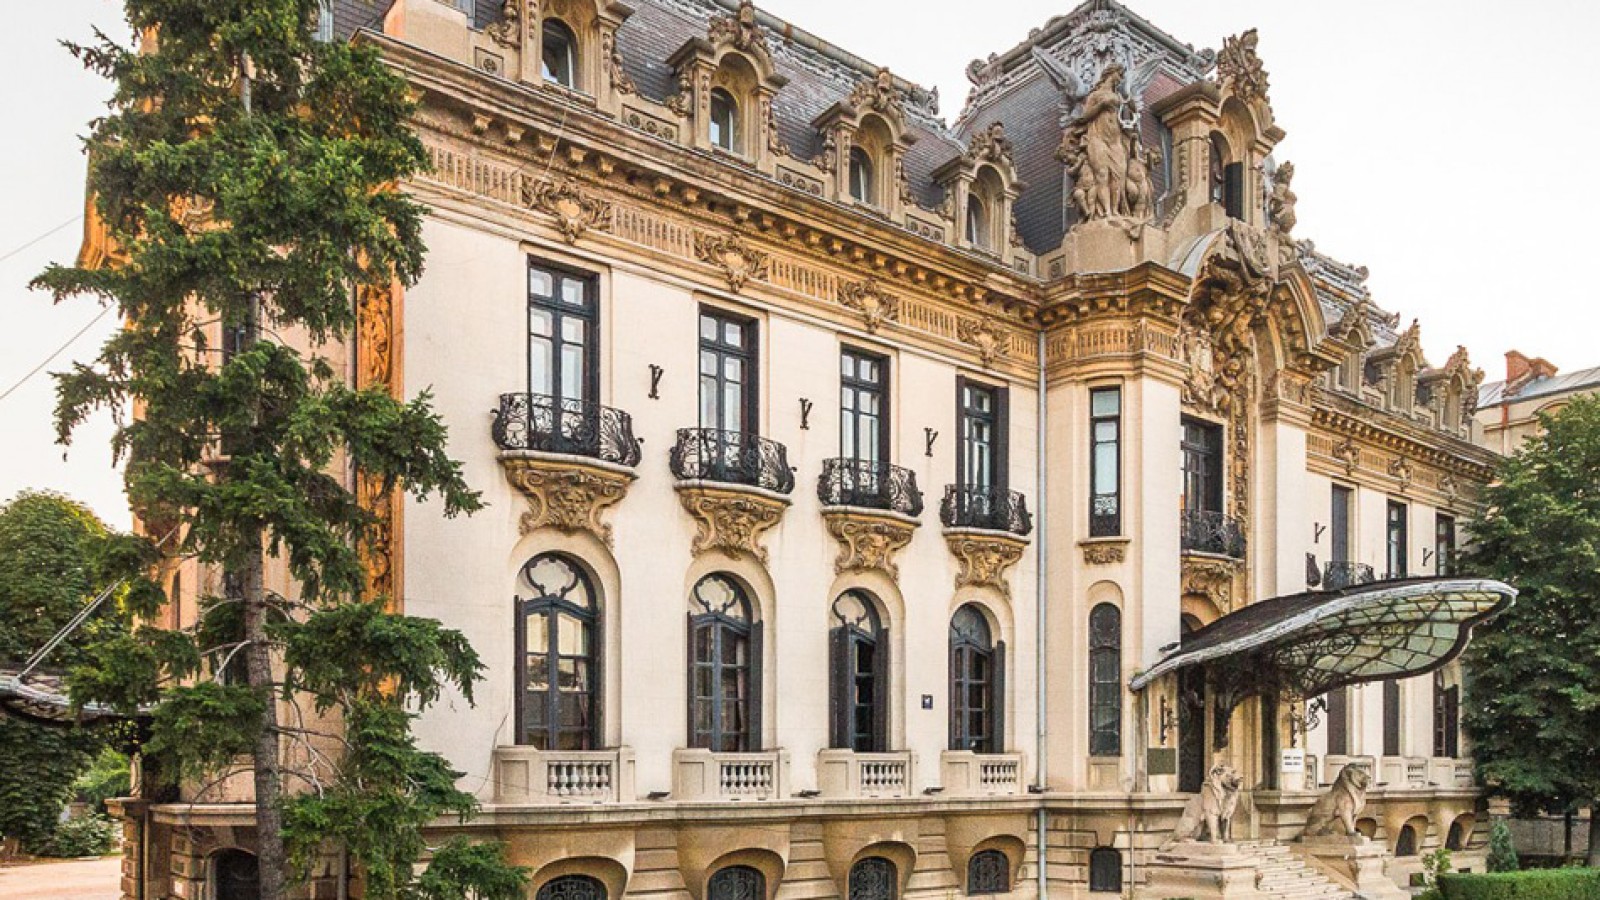 Muzeul Național "George Enescu" București - Palatul Cantacuzino